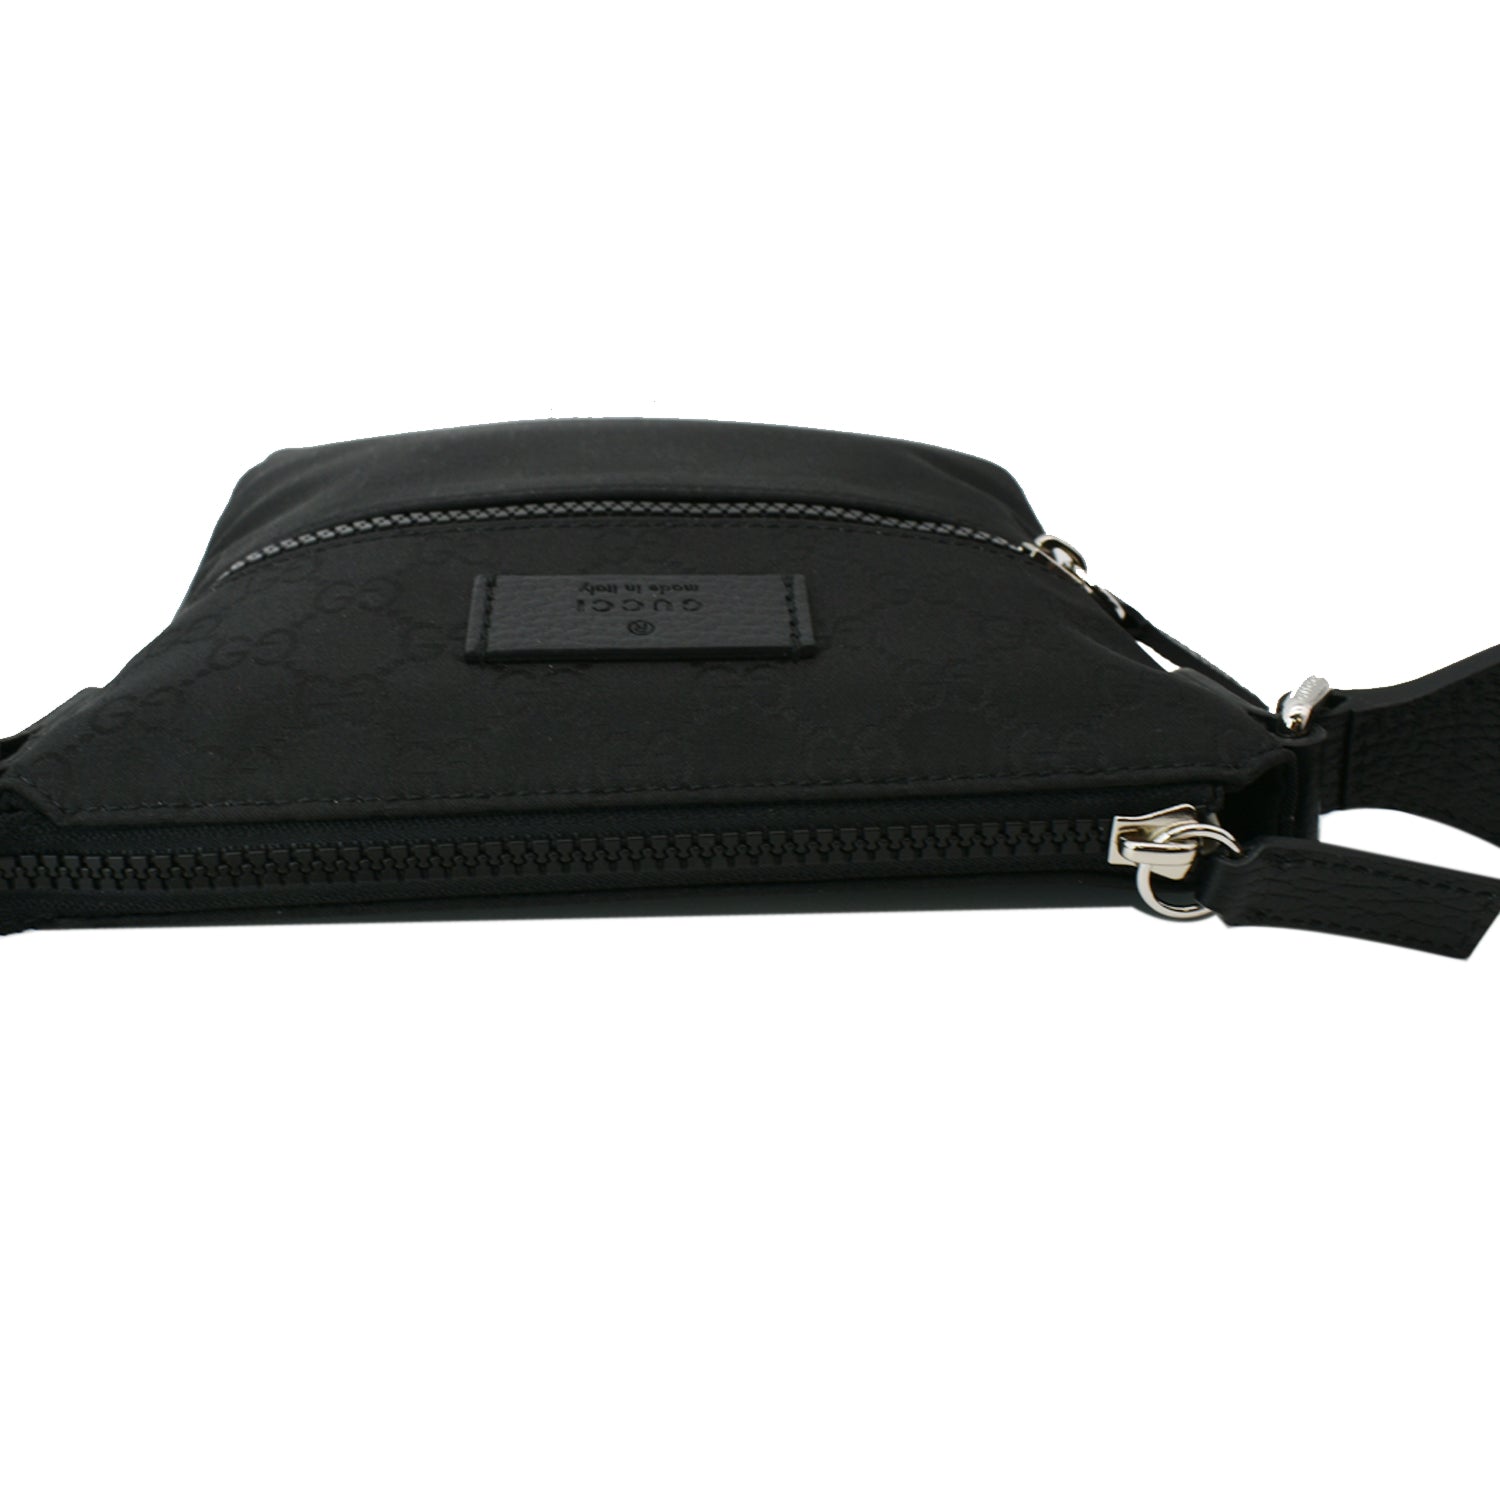 Black nylon messenger bag